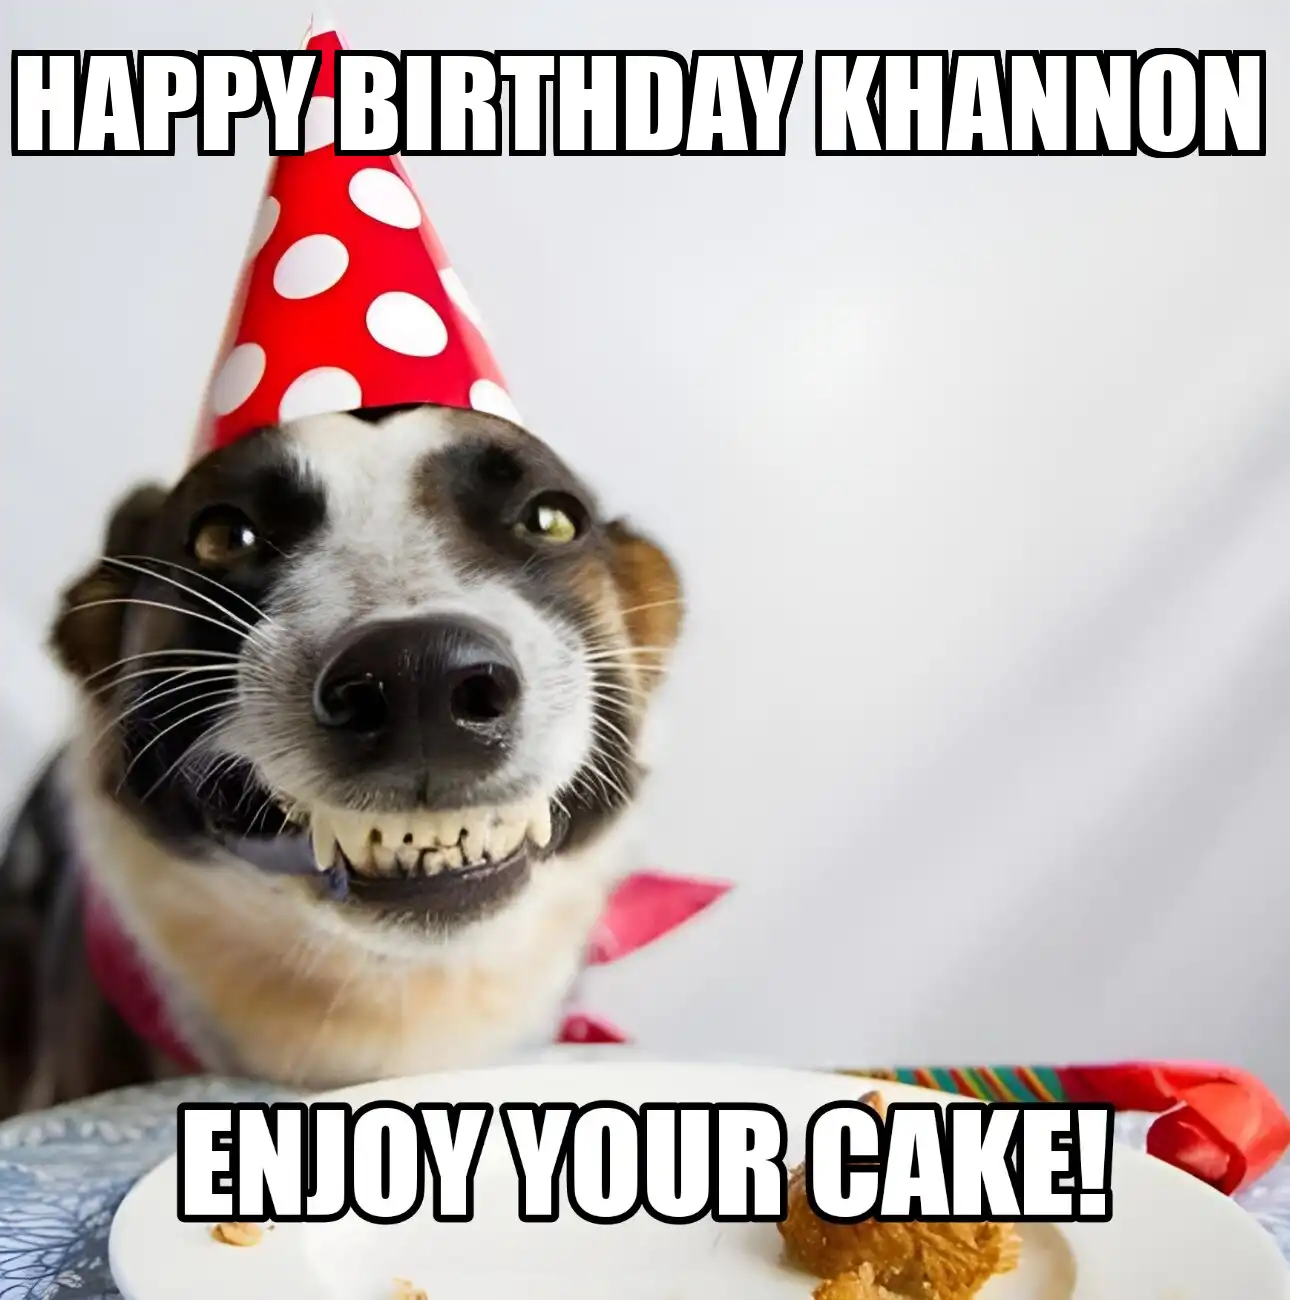 Happy Birthday Khannon Enjoy Your Cake Dog Meme